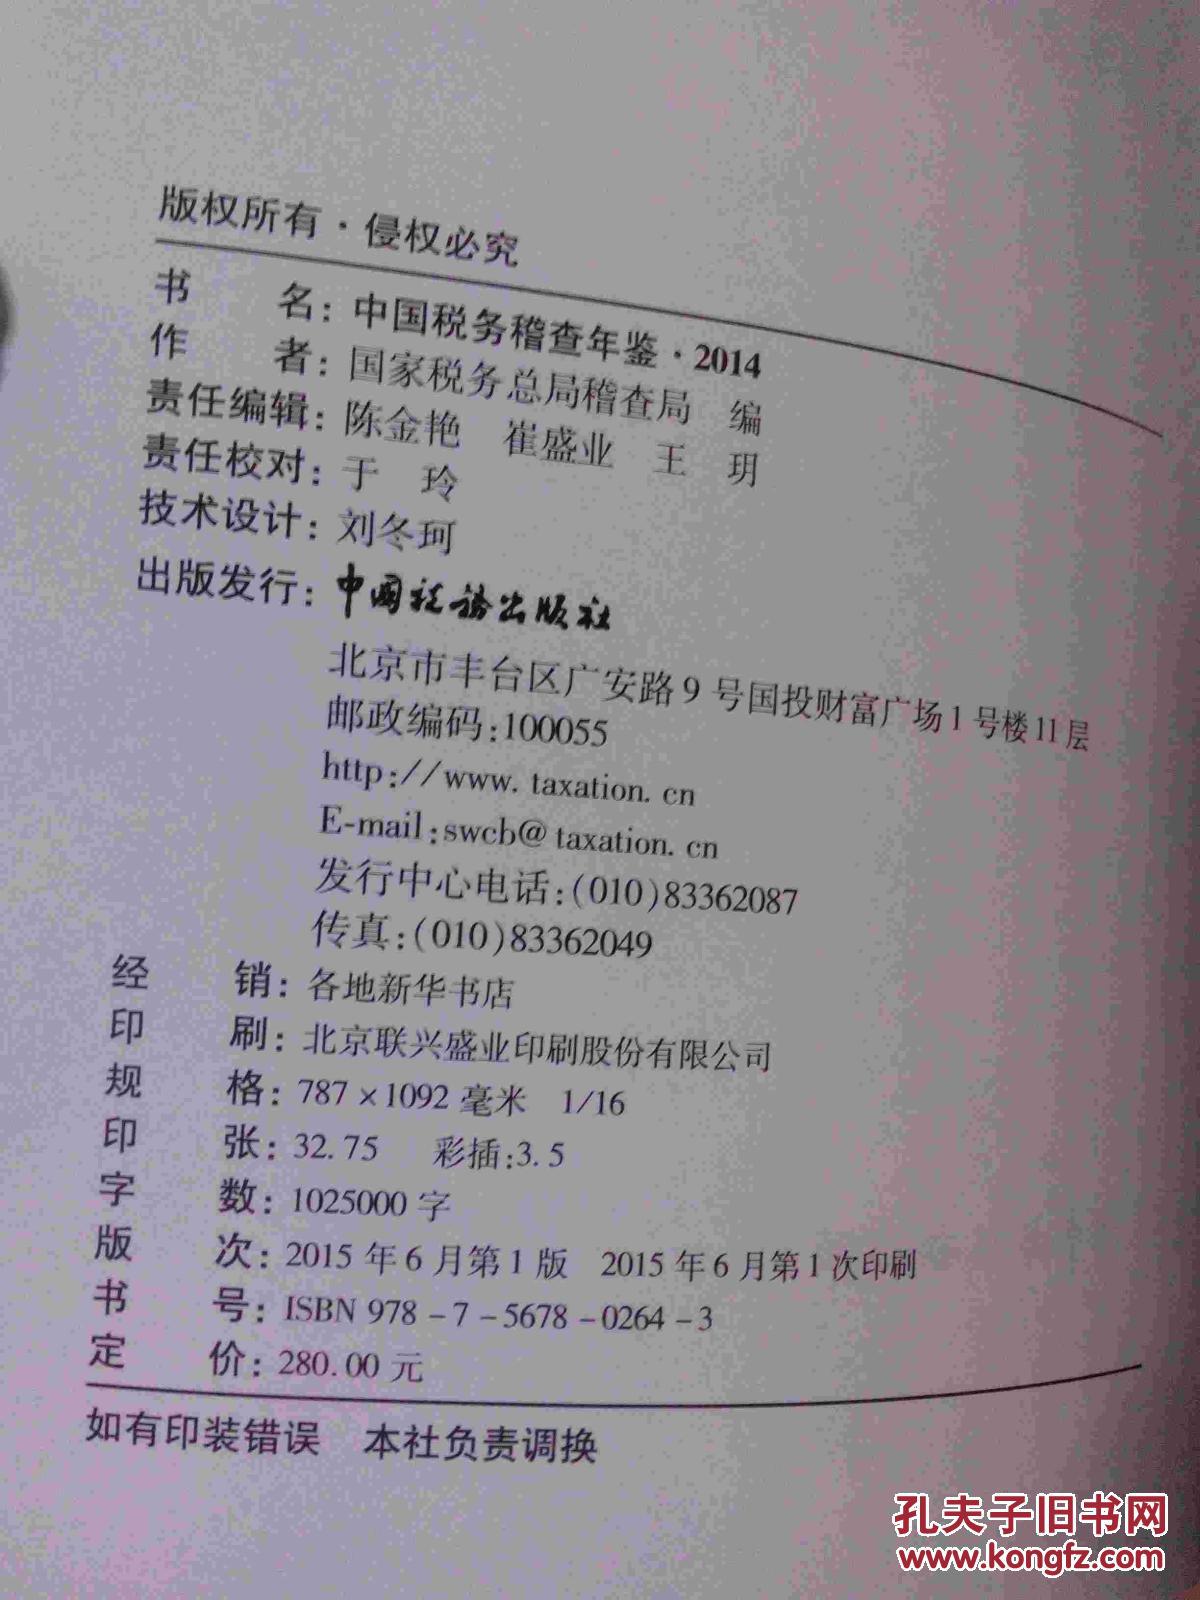 【图】中国税务稽查年鉴2014 带光盘_价格:12